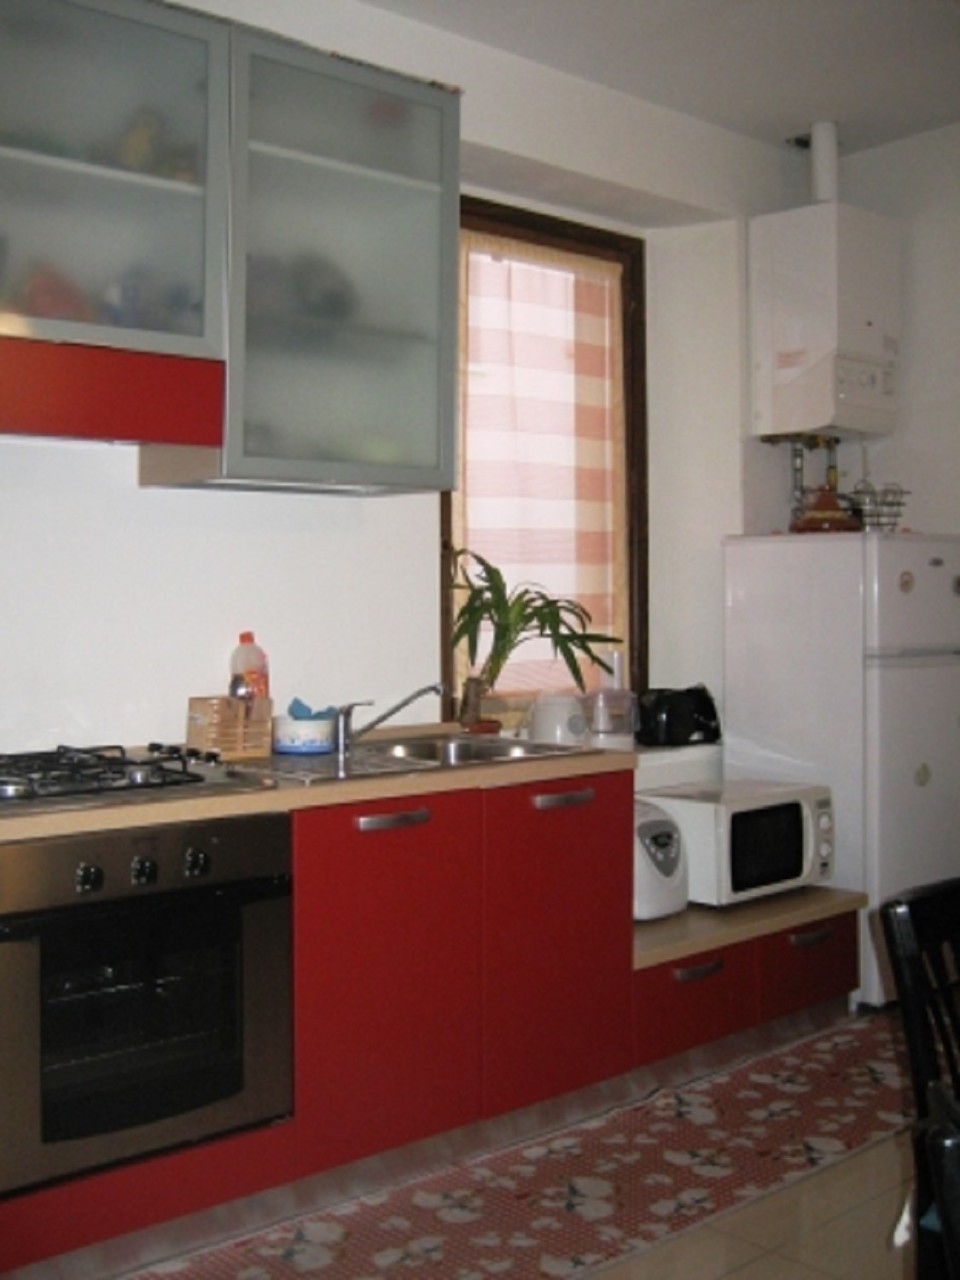 Appartamento in vendita a Guanzate, 2 locali, prezzo € 60.000 | PortaleAgenzieImmobiliari.it